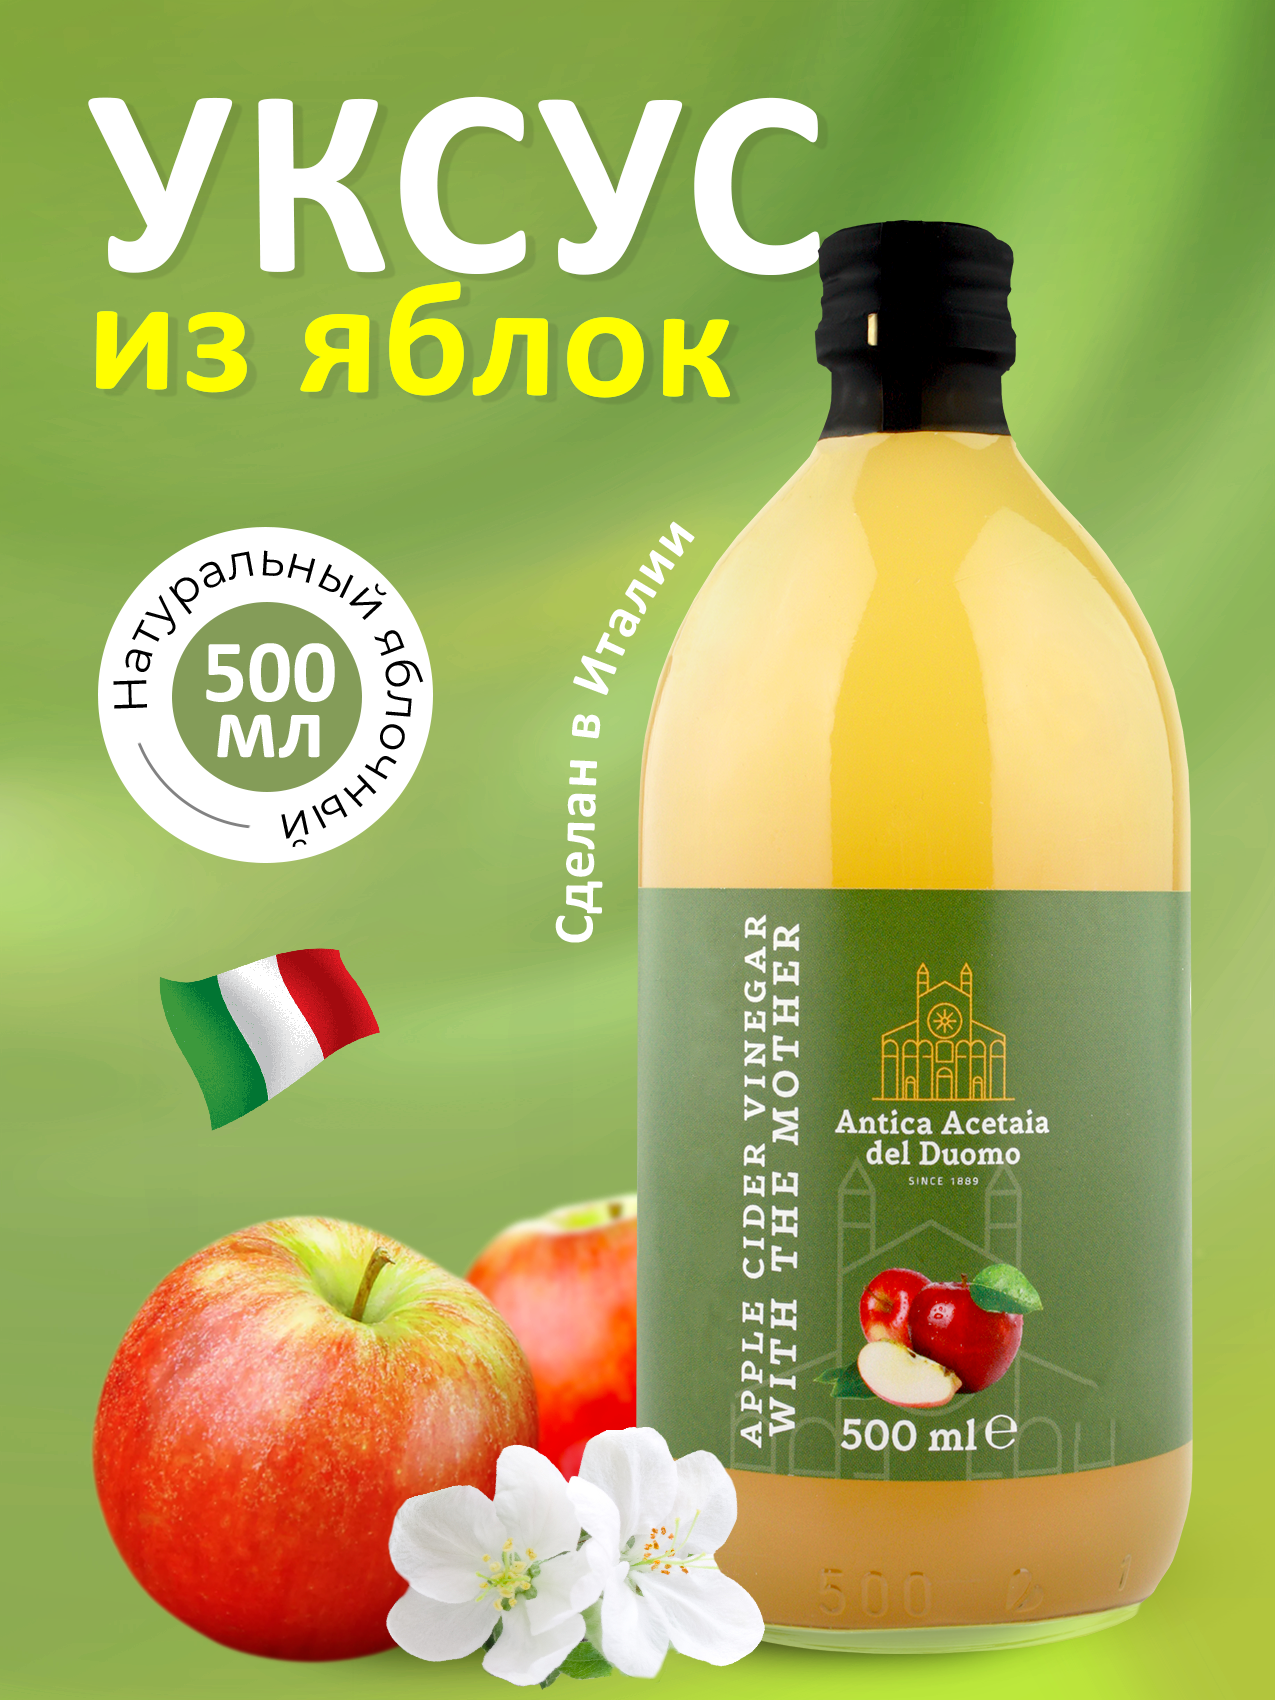 Уксус яблочный натуральный нефильтрованный "ANTICA ACETAIA DEL DUOMO" 500мл ст/б (Италия)